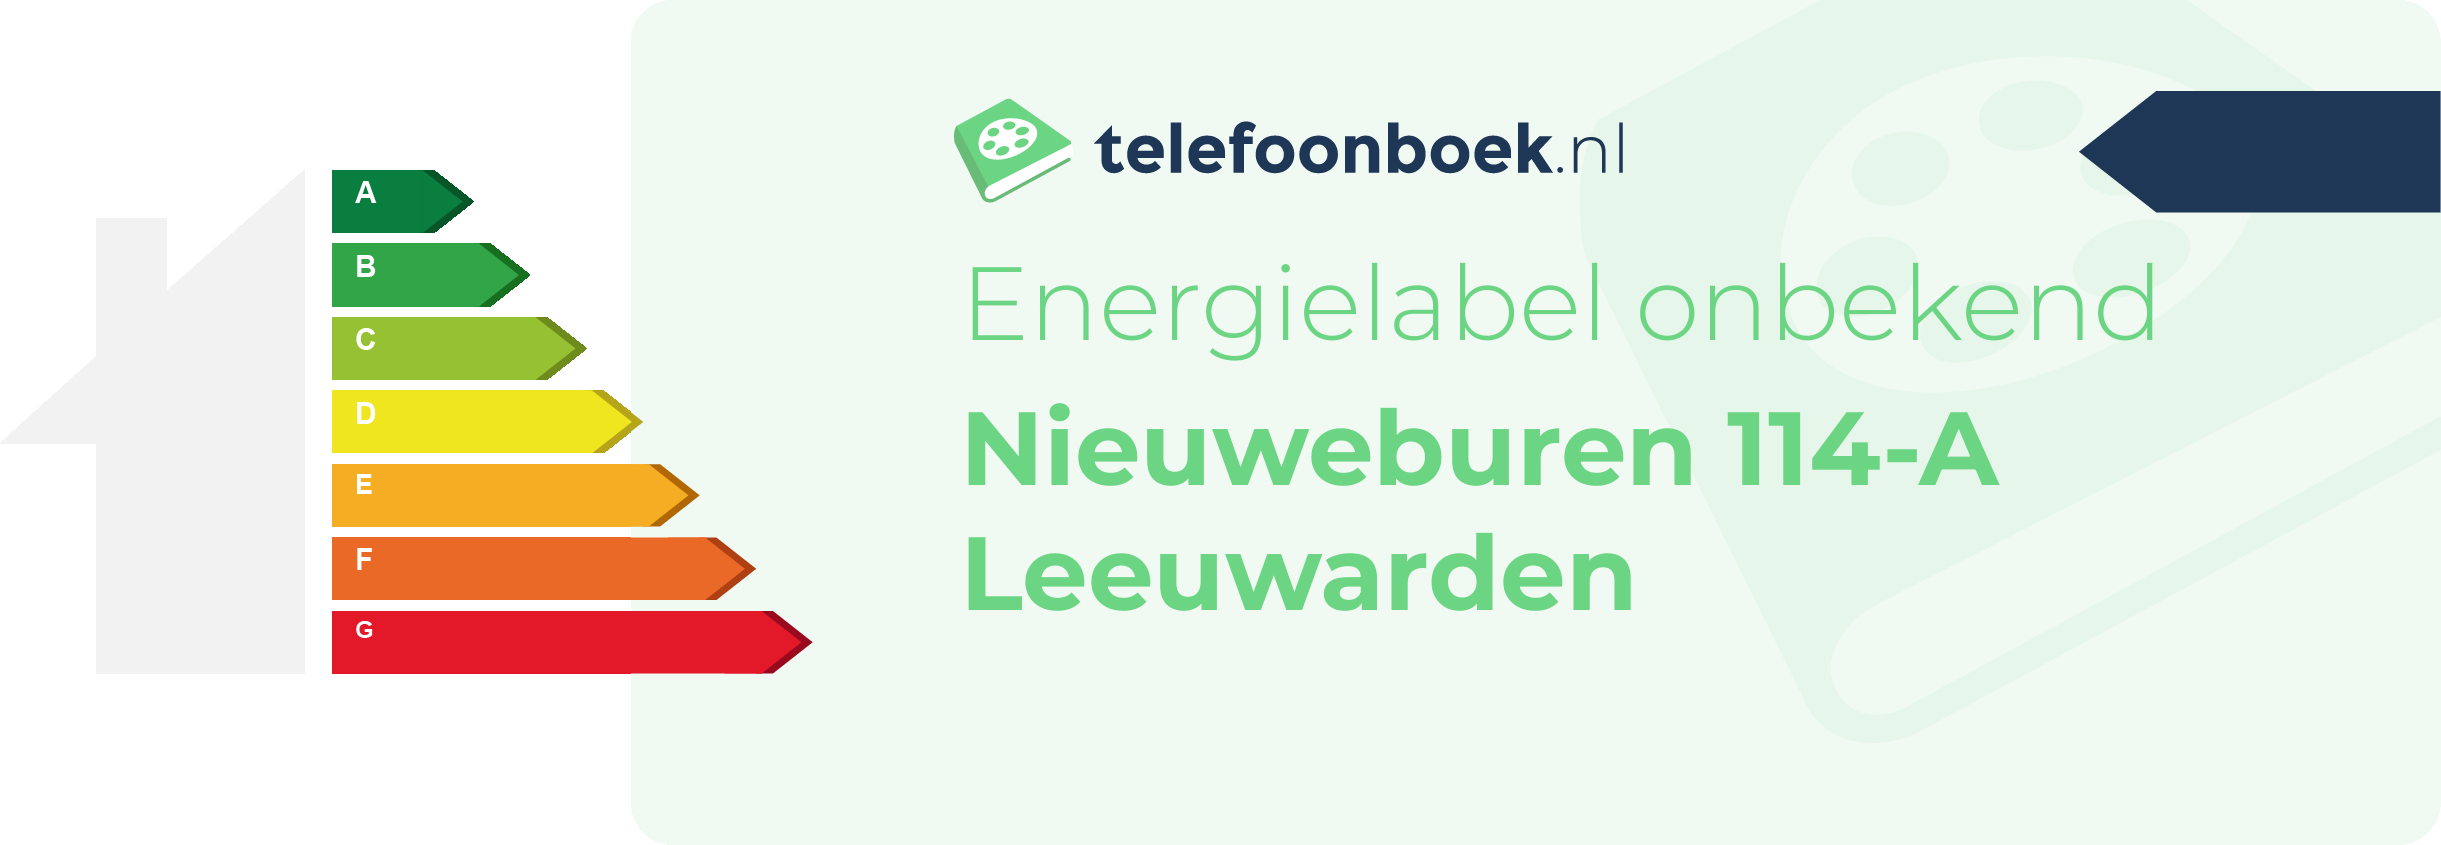 Energielabel Nieuweburen 114-A Leeuwarden